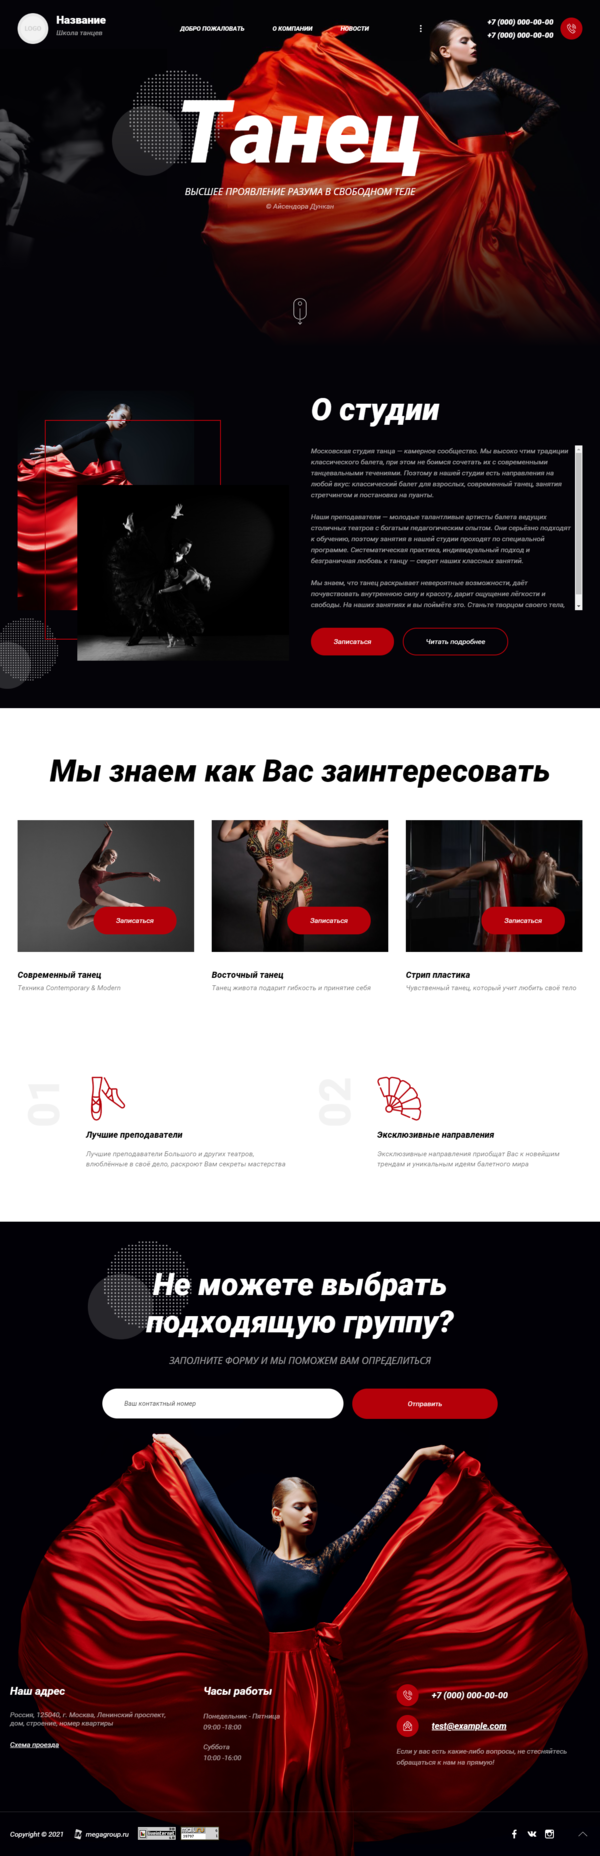 Готовый Сайт-Бизнес № 3021158 - Школы танцев, обучение танцам (Десктопная версия)